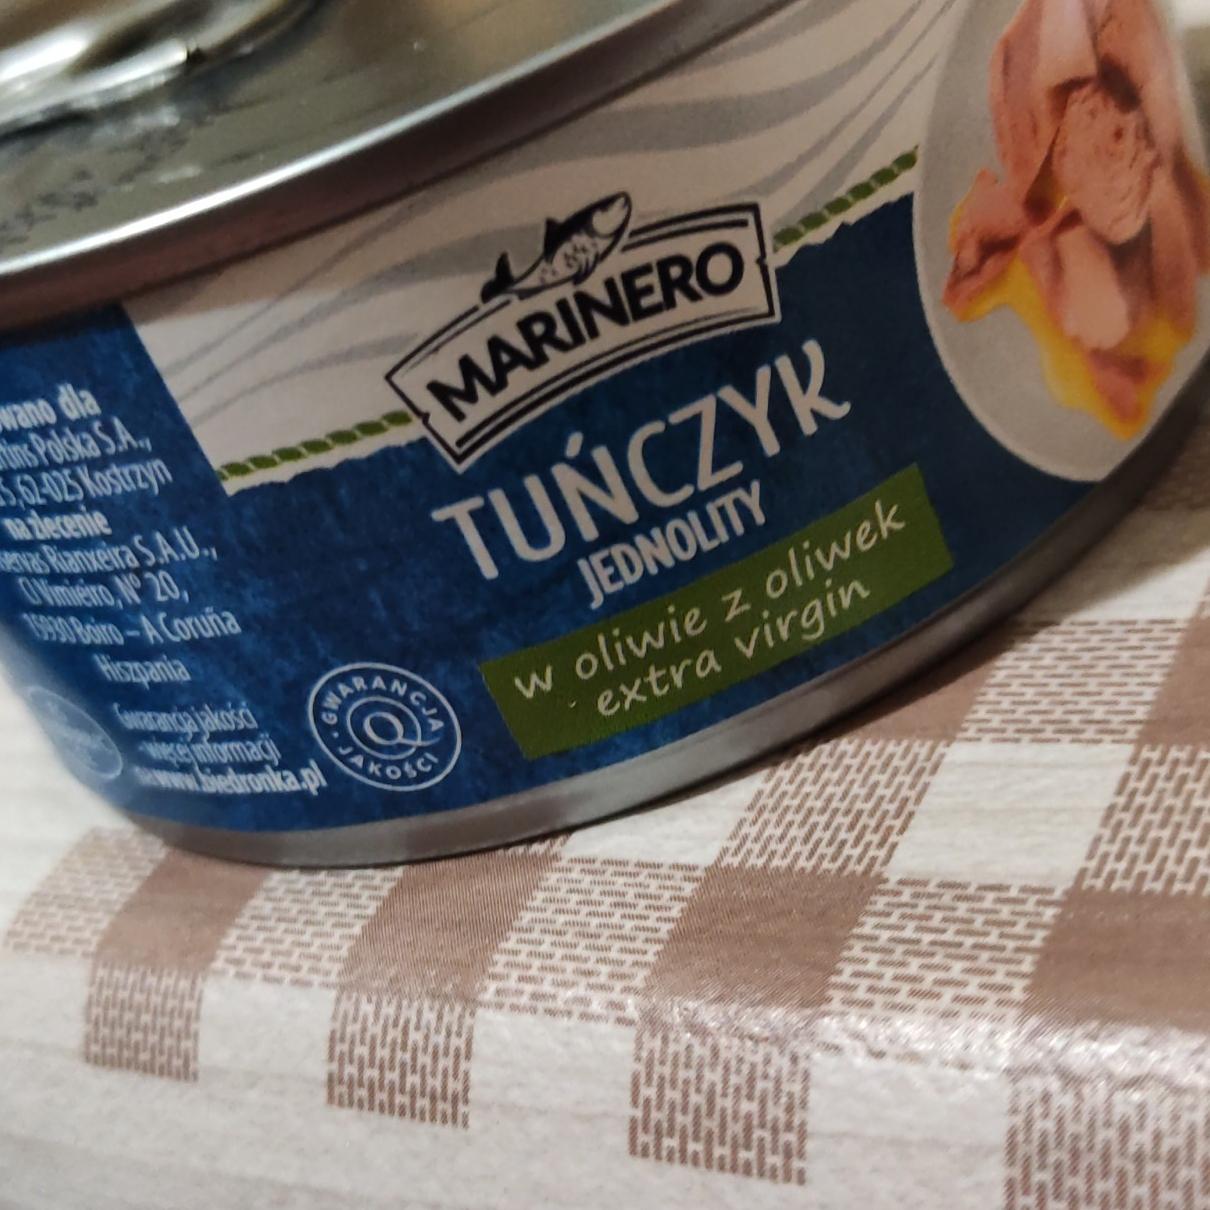 Zdjęcia - Tuńczyk jednolity w oliwie z oliwek extra virgin Marinero